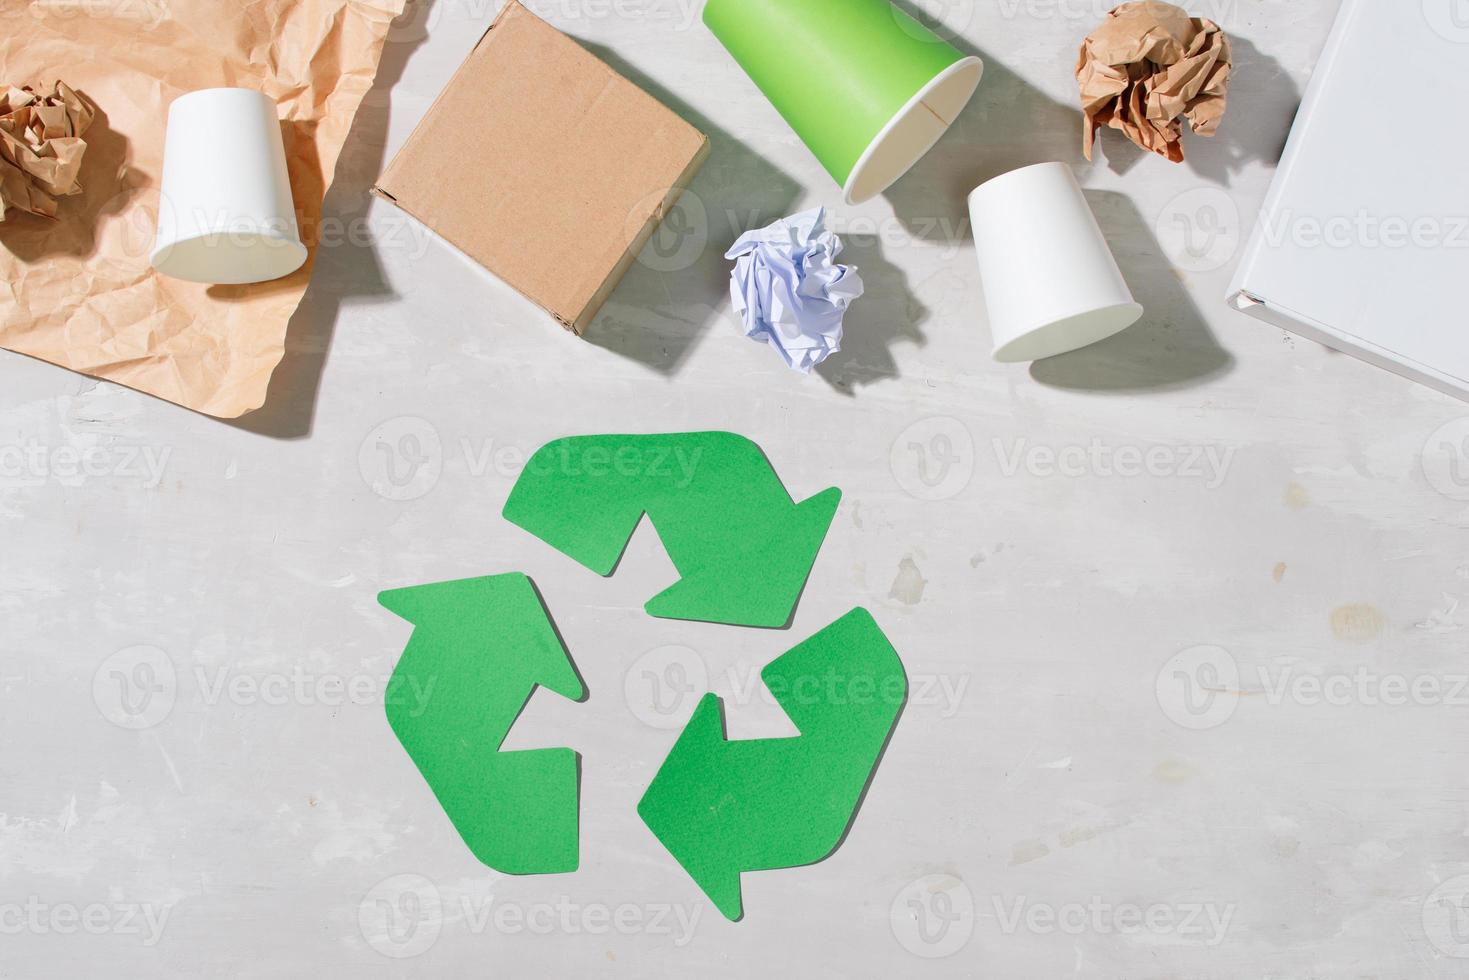 recycling symbool met verspilling Aan houten achtergrond top visie foto